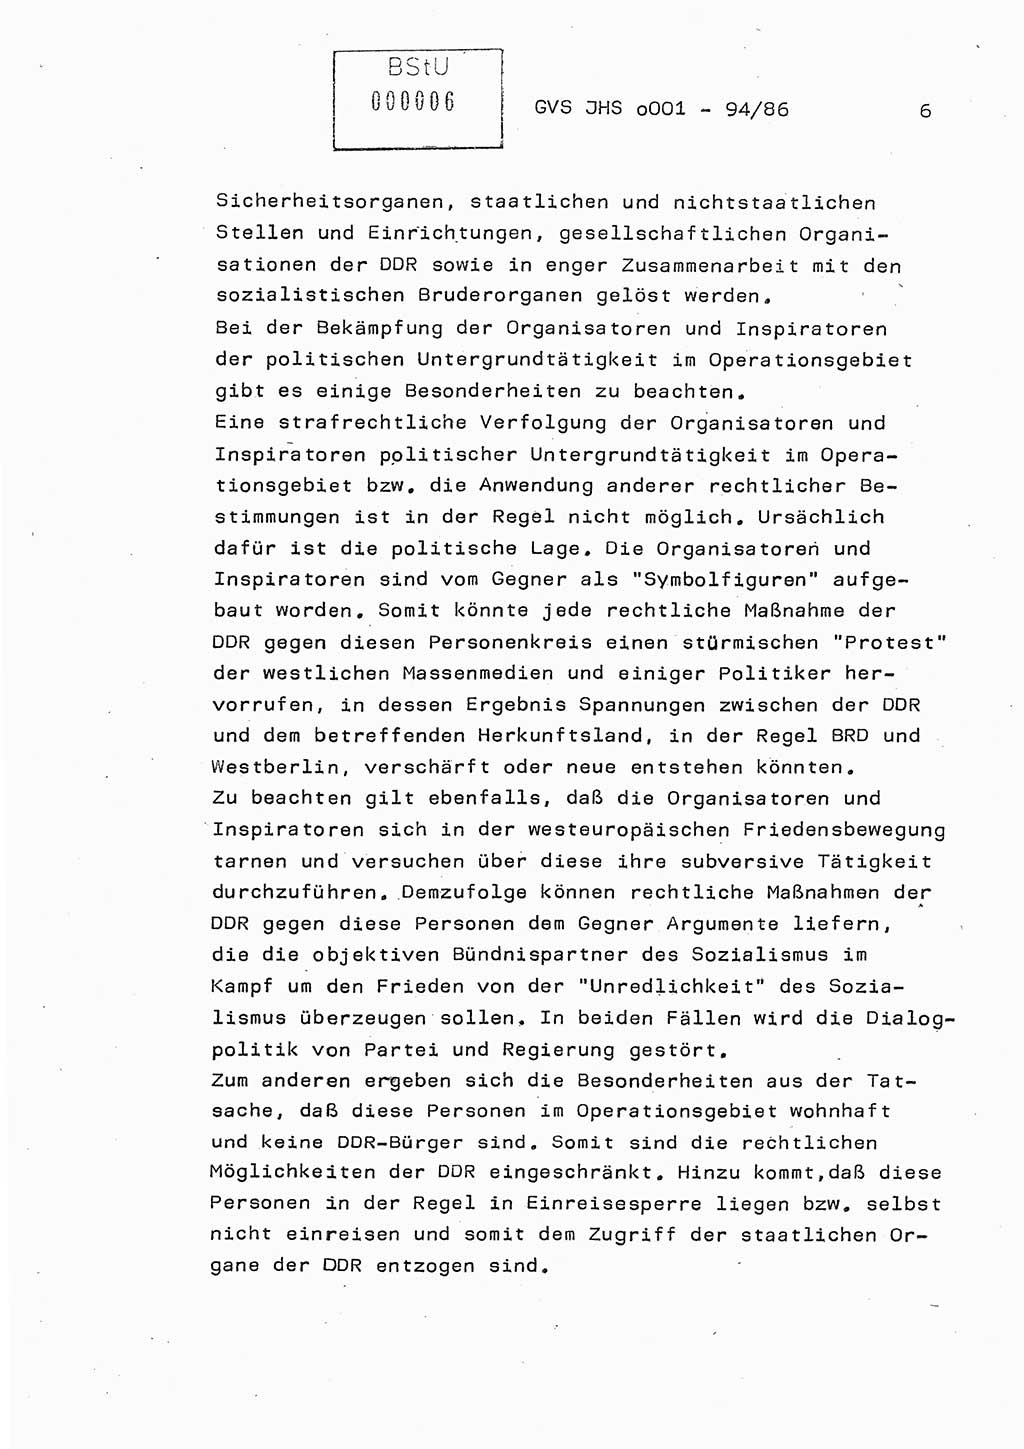 Diplomarbeit Oberleutnant Volkmar Pechmann (HA ⅩⅩ/5), Ministerium für Staatssicherheit (MfS) [Deutsche Demokratische Republik (DDR)], Juristische Hochschule (JHS), Geheime Verschlußsache (GVS) o001-94/86, Potsdam 1986, Blatt 6 (Dipl.-Arb. MfS DDR JHS GVS o001-94/86 1986, Bl. 6)